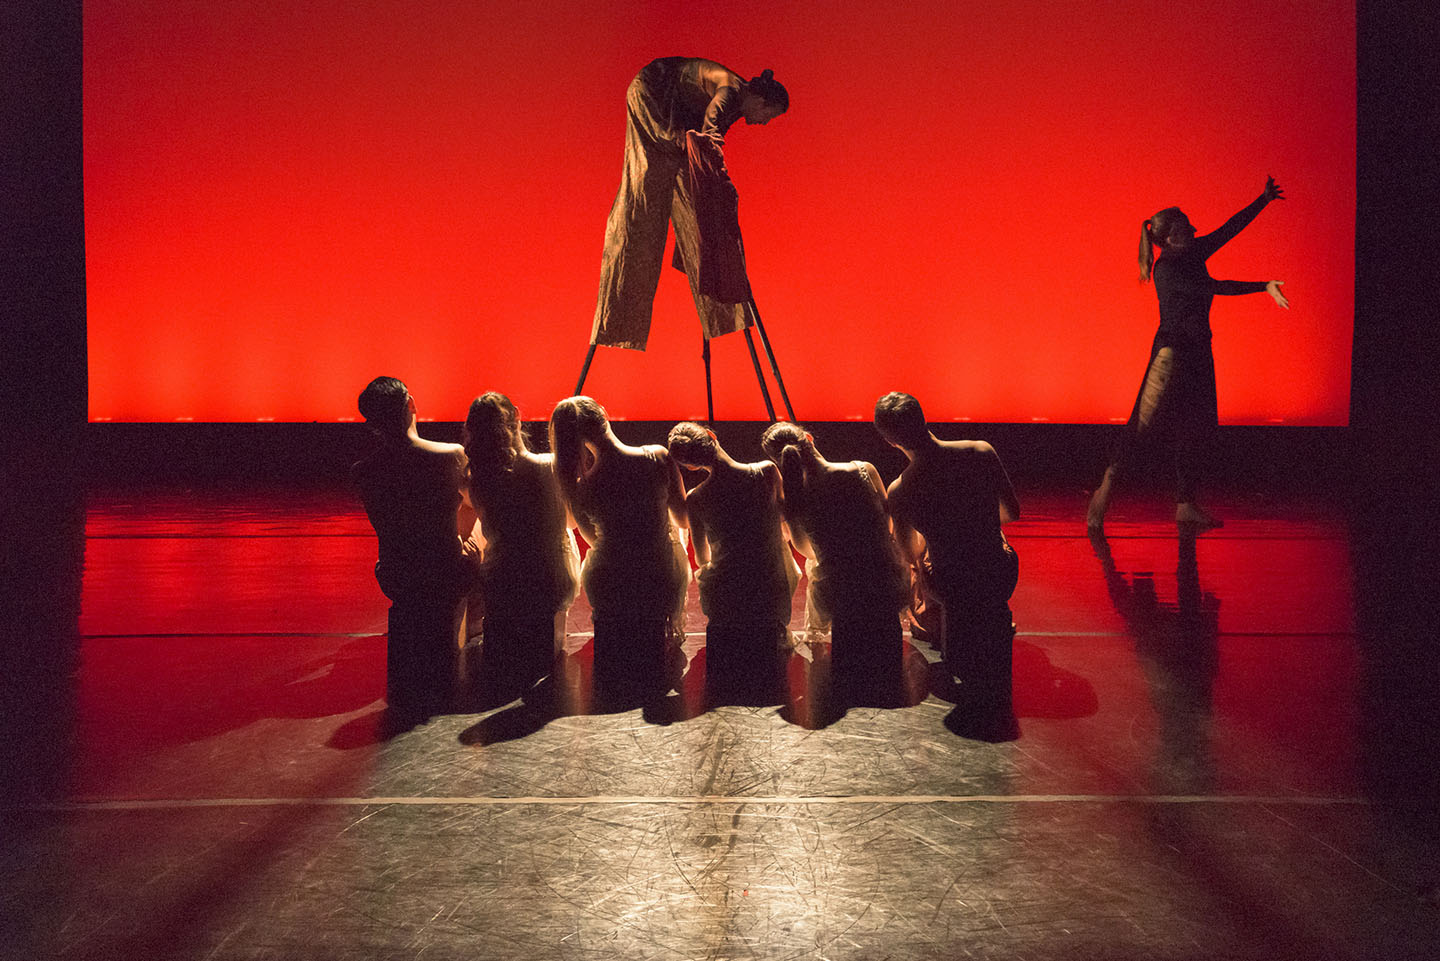 Image of 6 MorrisonDancers kneeling on a stage in front of a stilt walker in front of a red backgreound